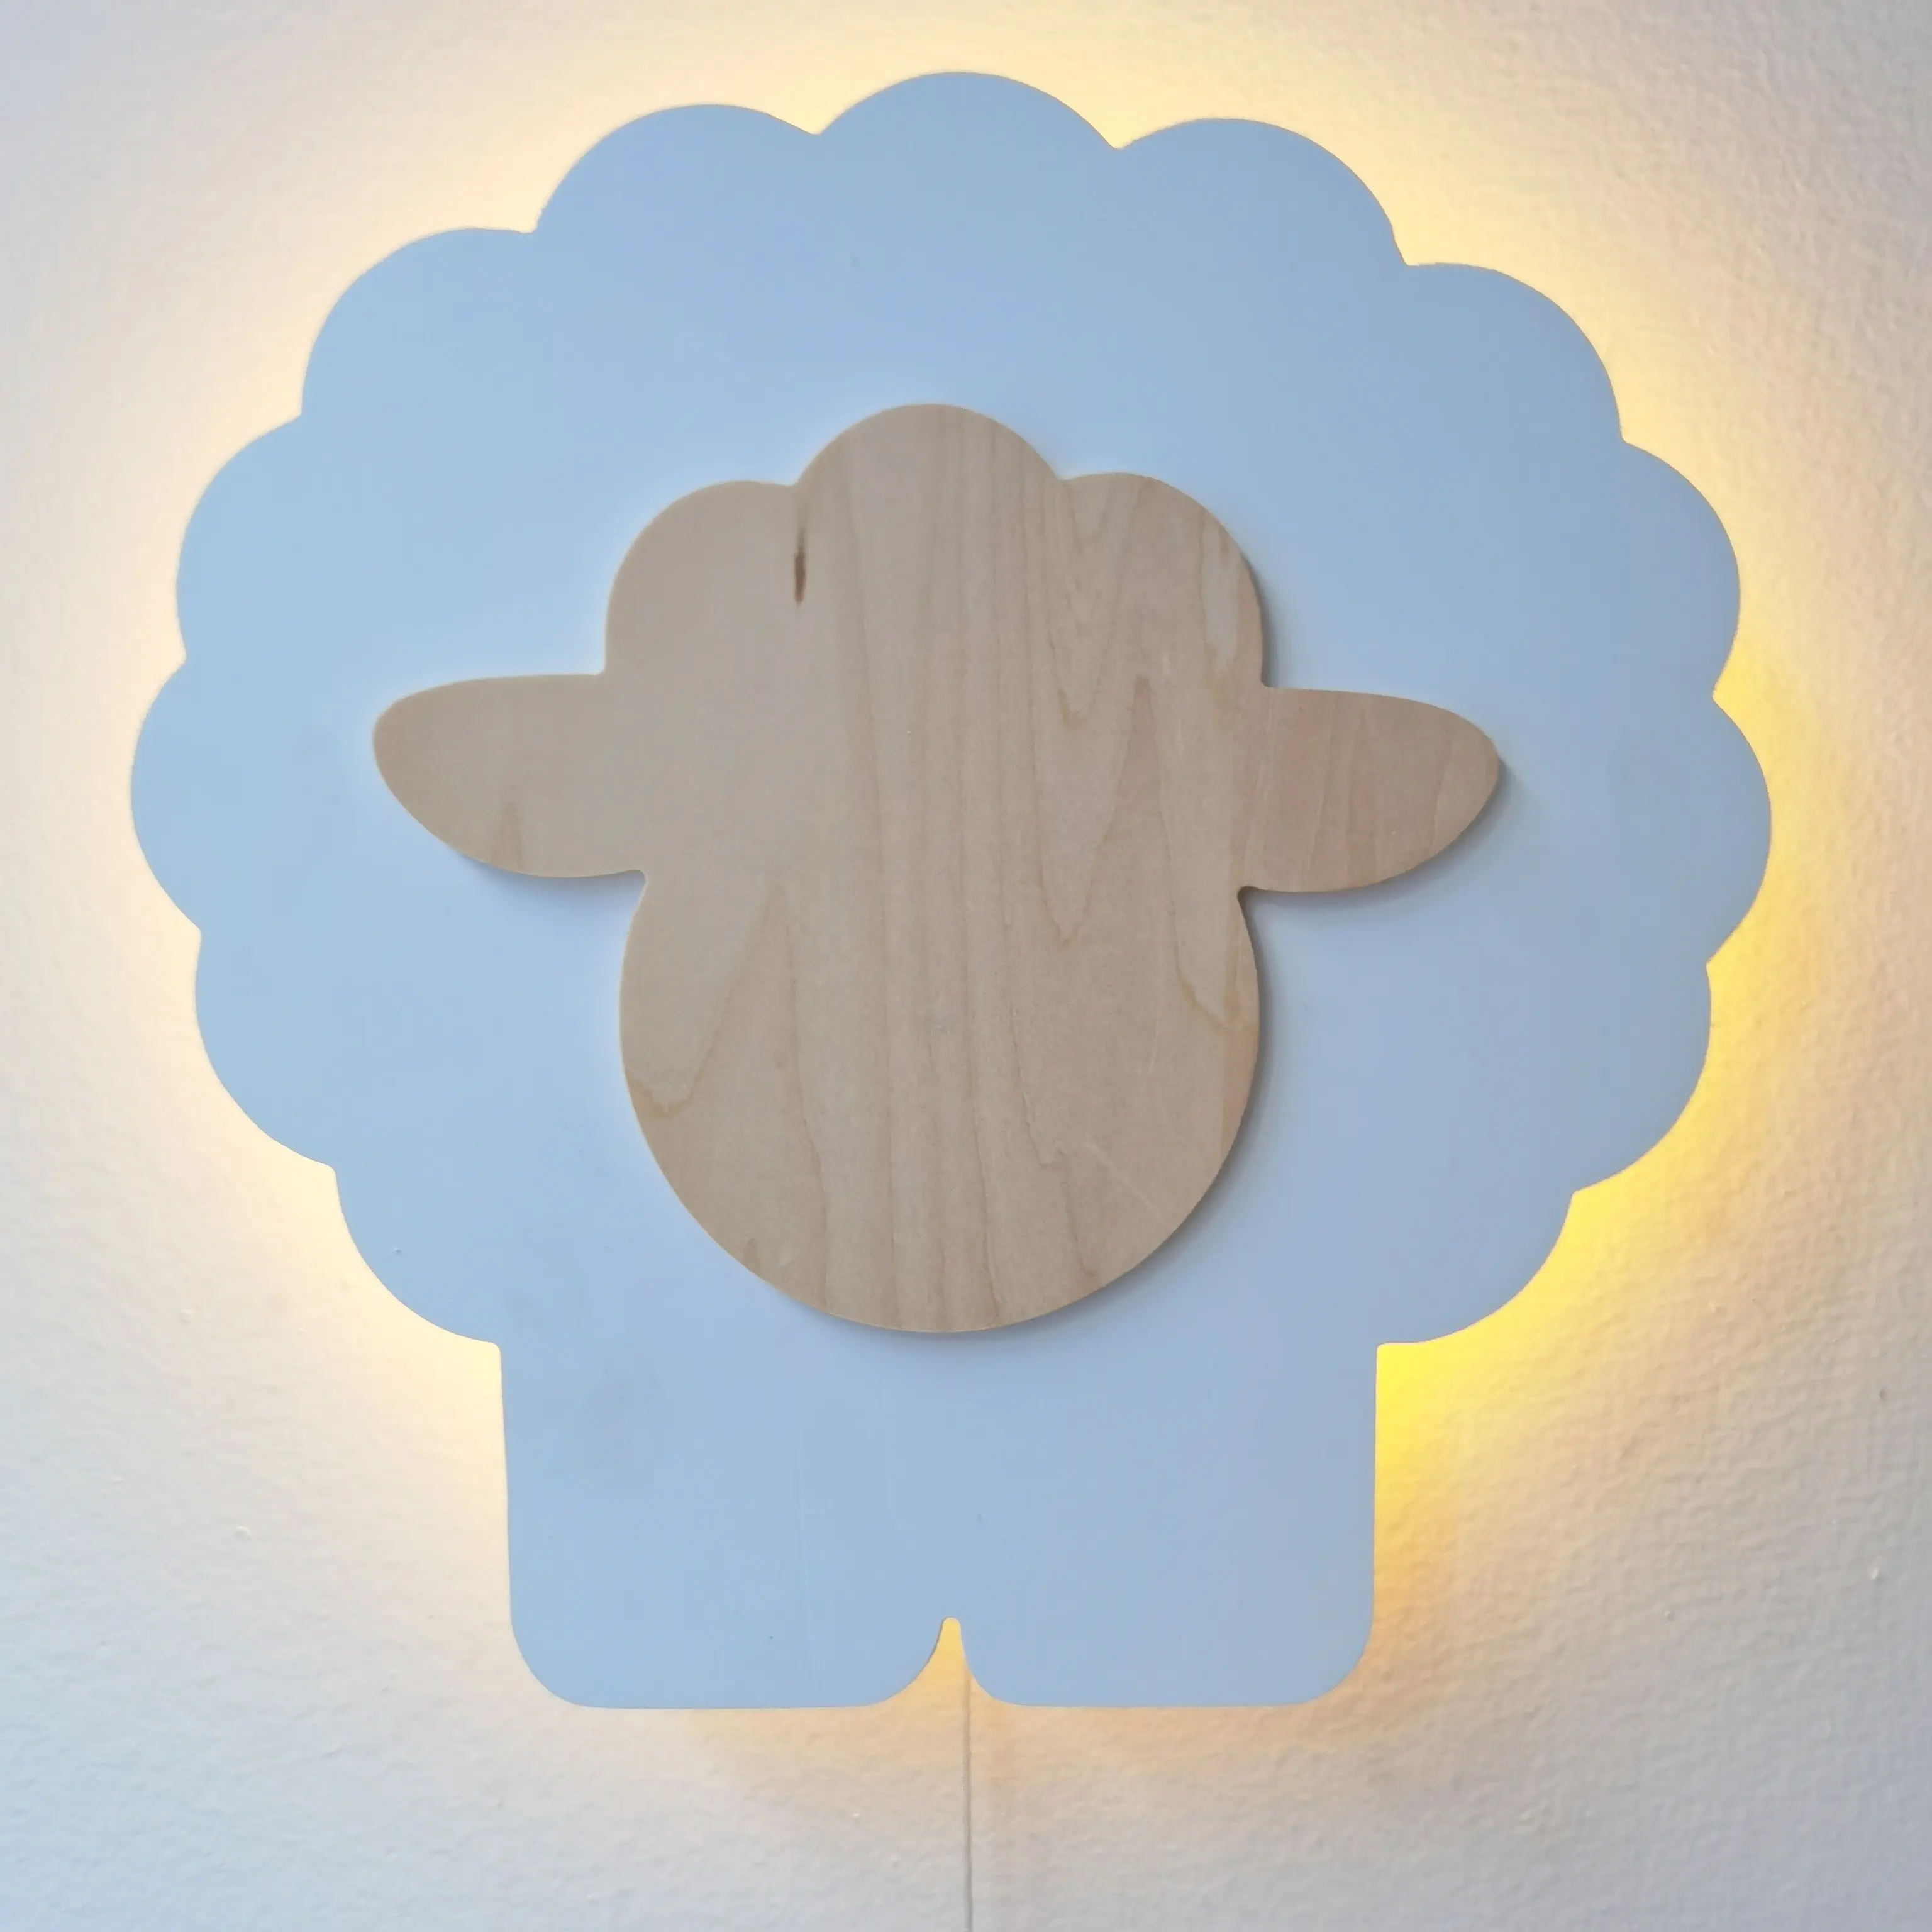 Dekorasi dinding domba dengan kabel tarik lampu, barang dekorasi dinding kamar anak keselamatan dioperasikan baterai AA untuk bayi anak-anak